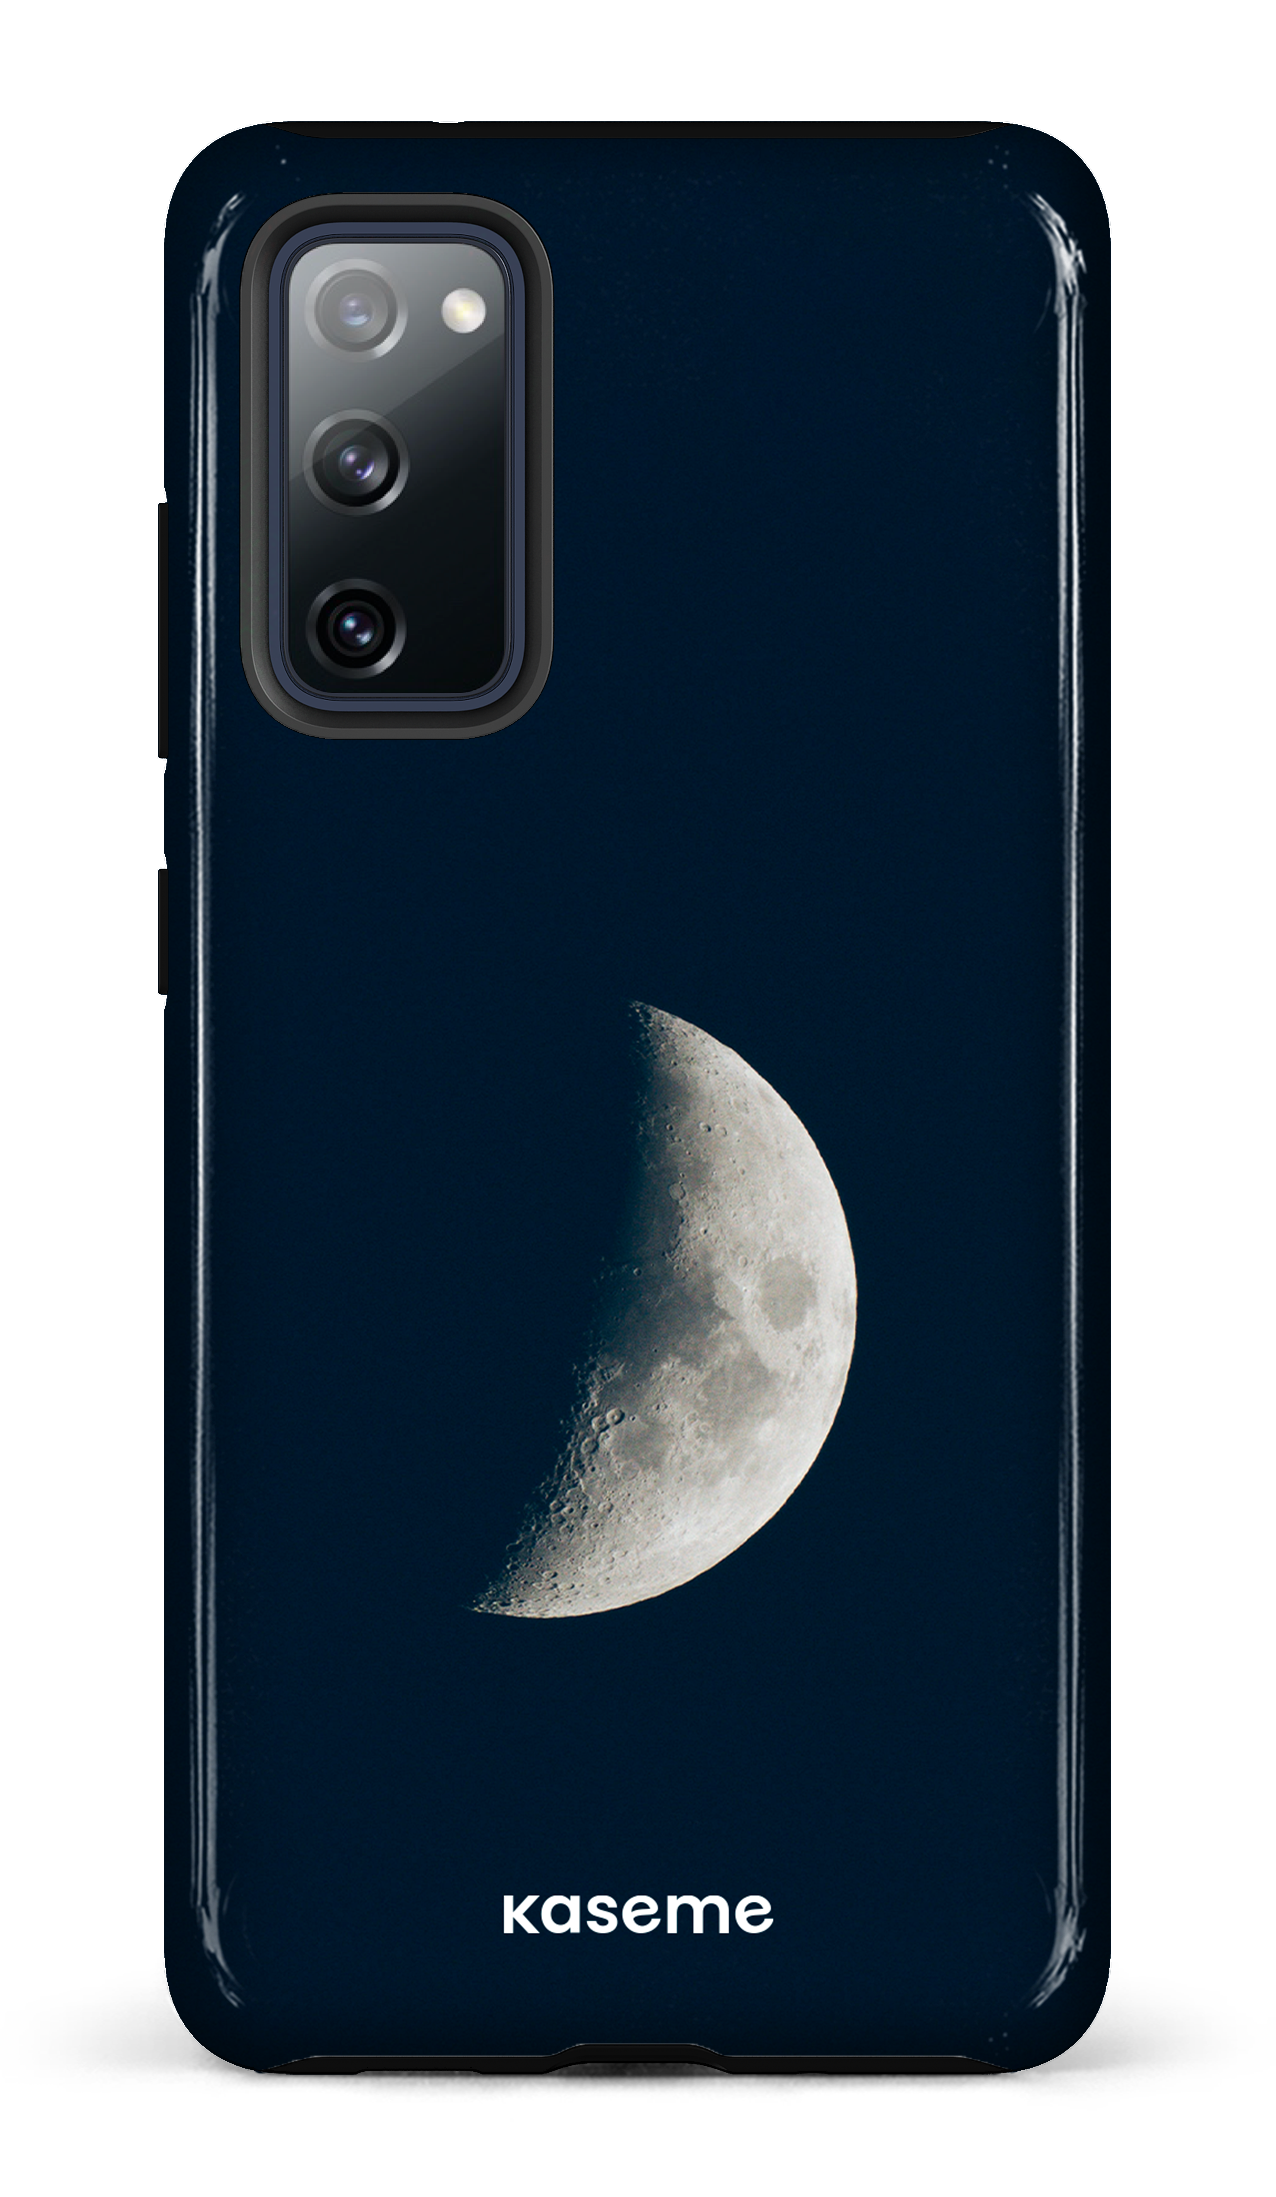 La Luna by Yulneverroamalone - Galaxy S20 FE